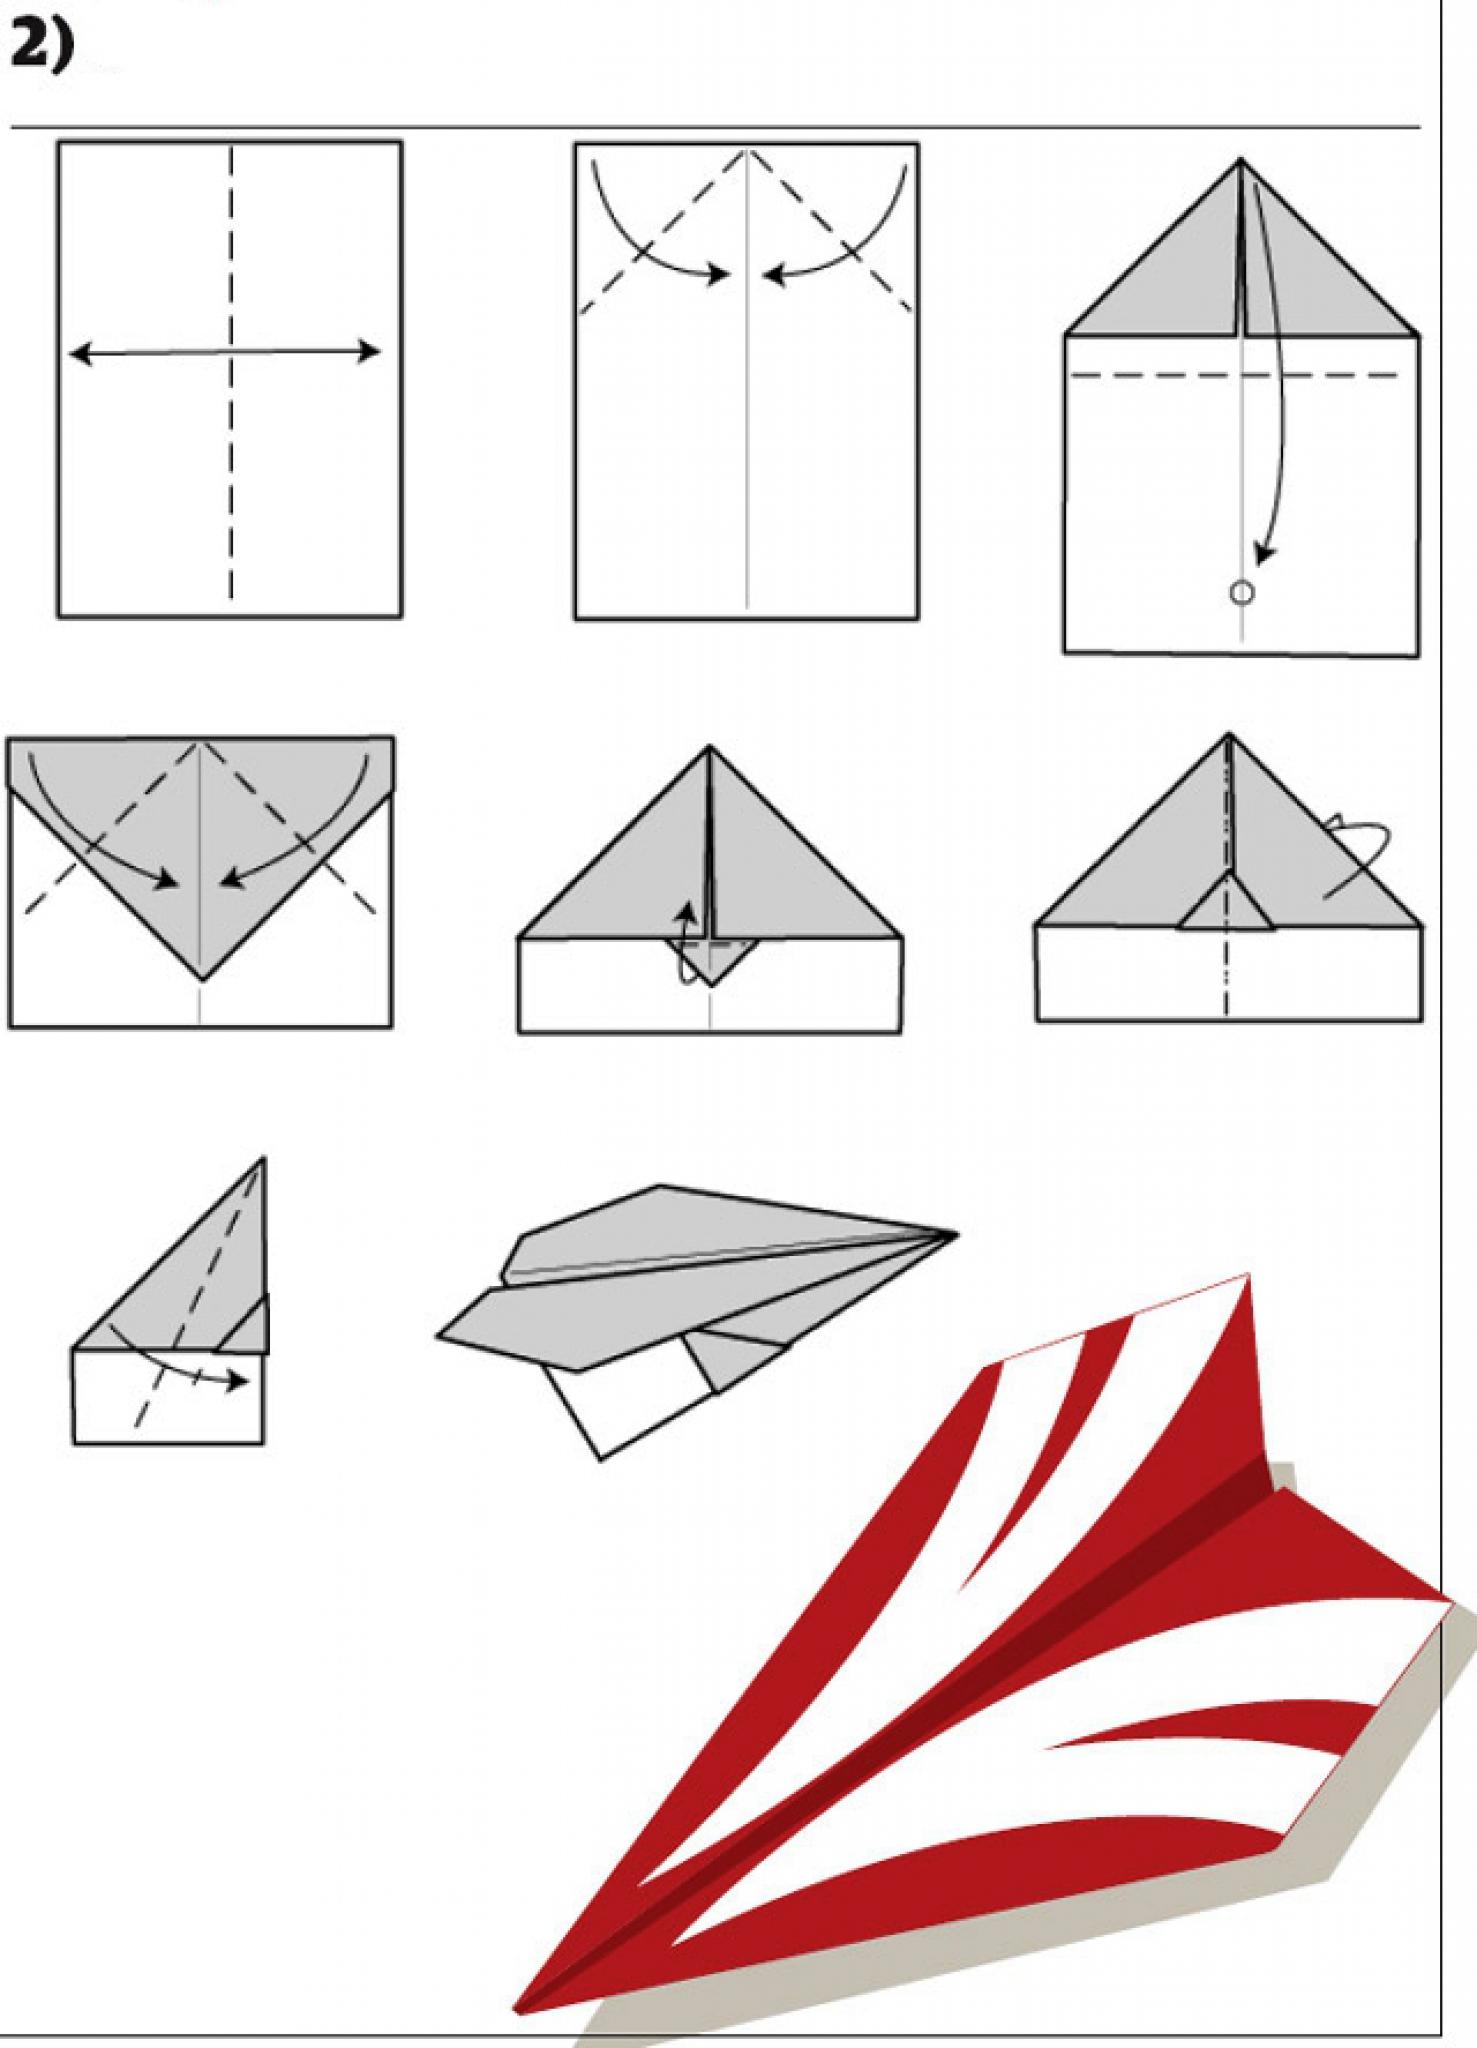 Как сделать классический конверт в технике оригами без клея